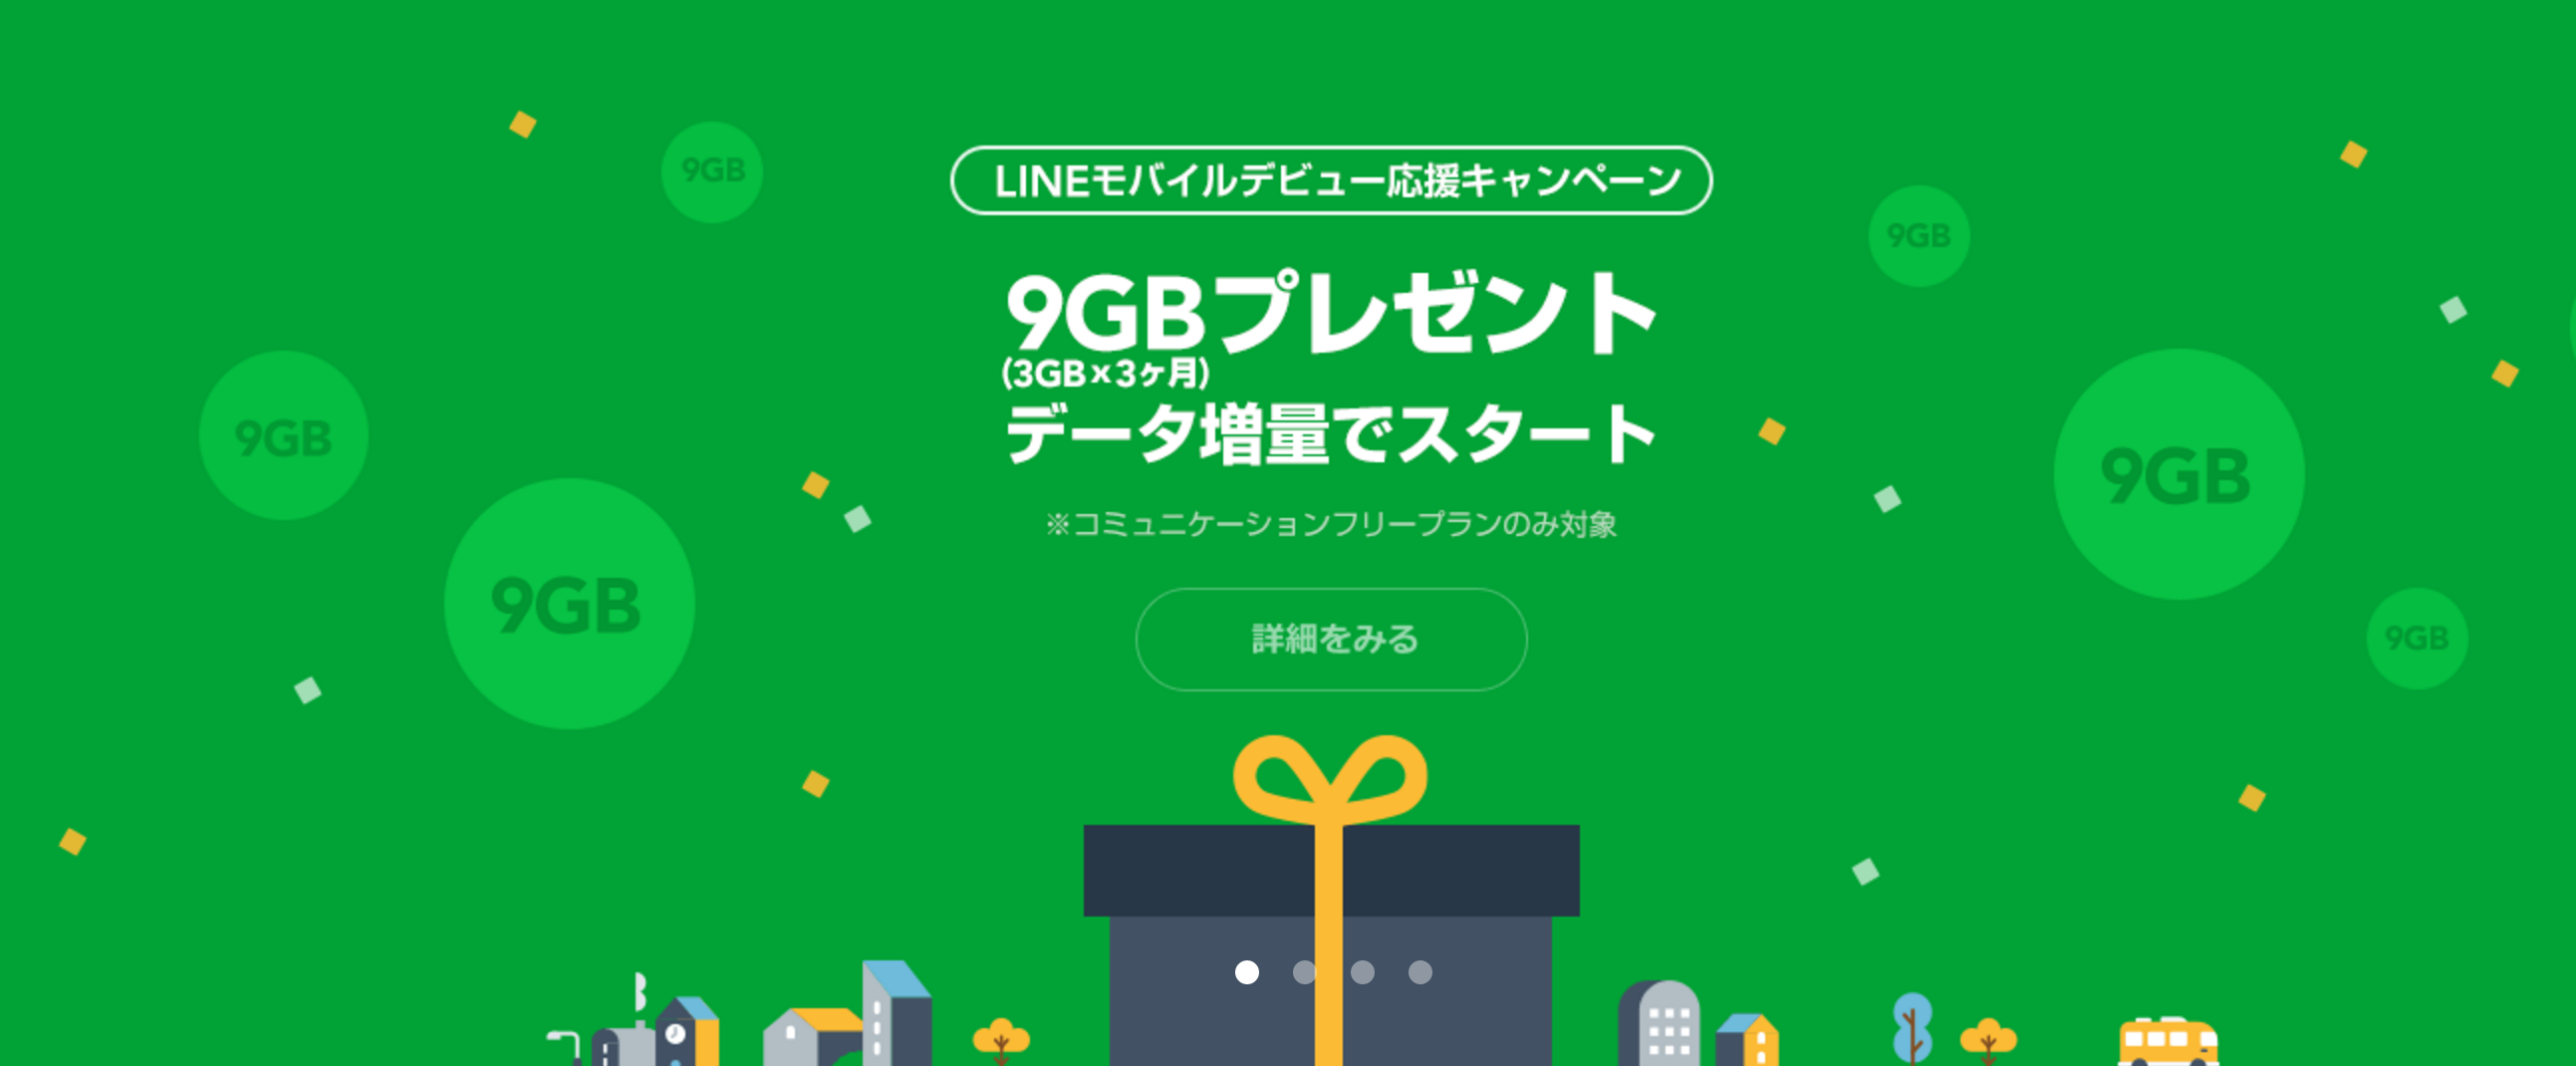 11/1〜12/31までにLINEモバイルを契約しよう！3ヶ月間データ容量3GB増量キャンペーン実施